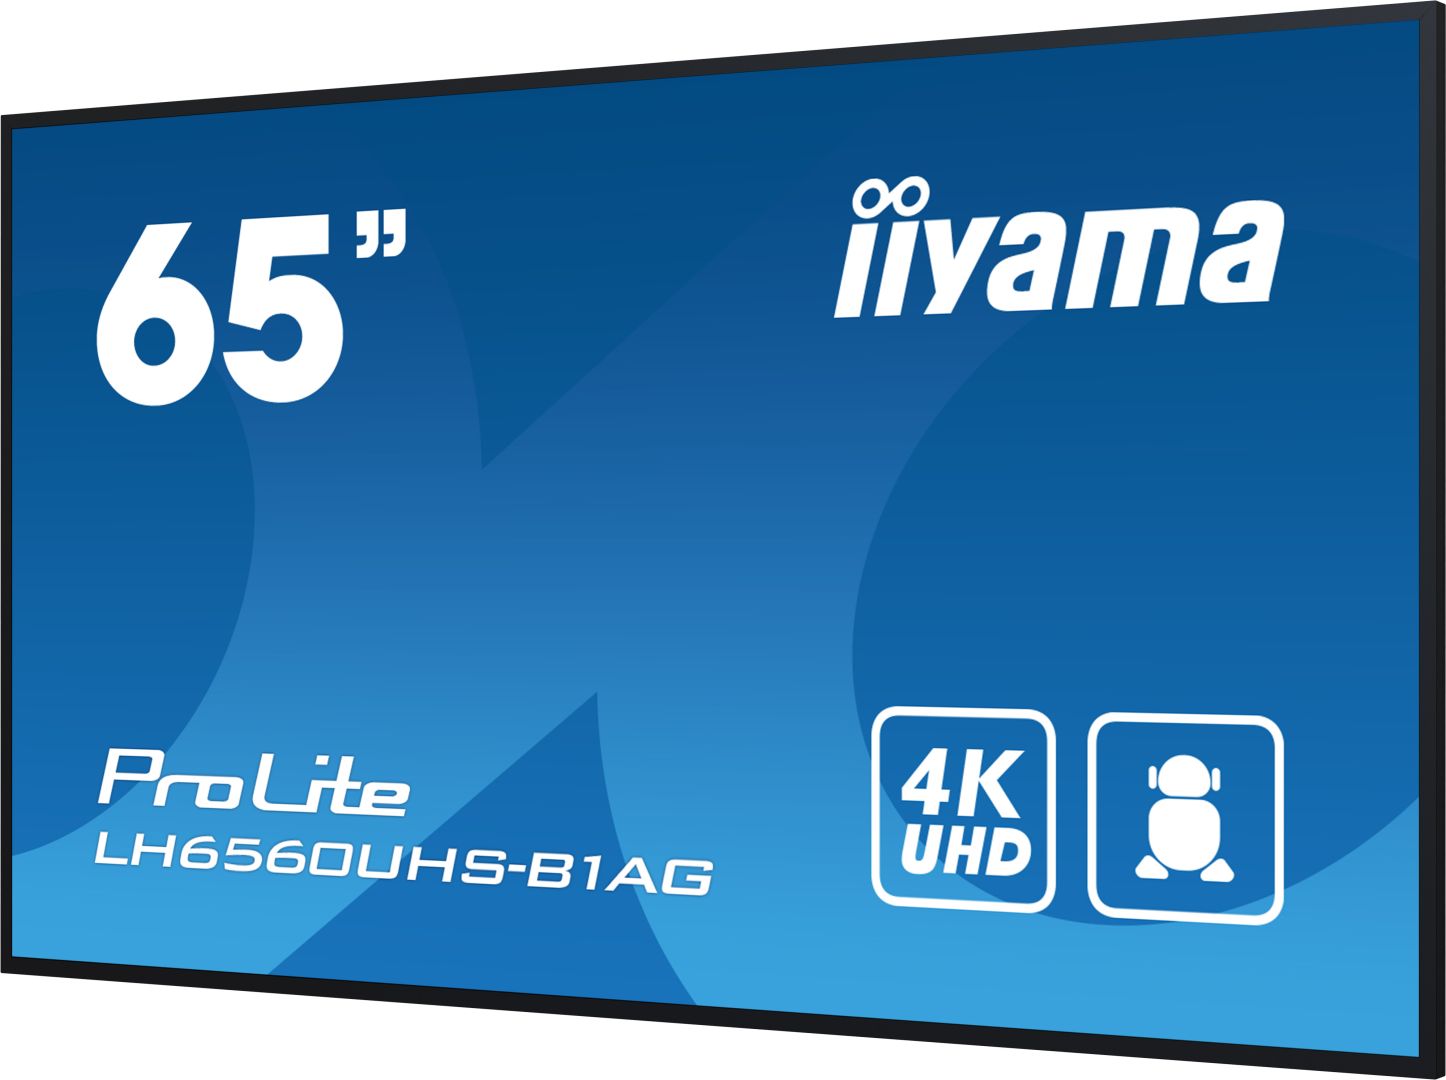 iiyama 65" ProLite LH6560UHS-B1AG LED Display-6